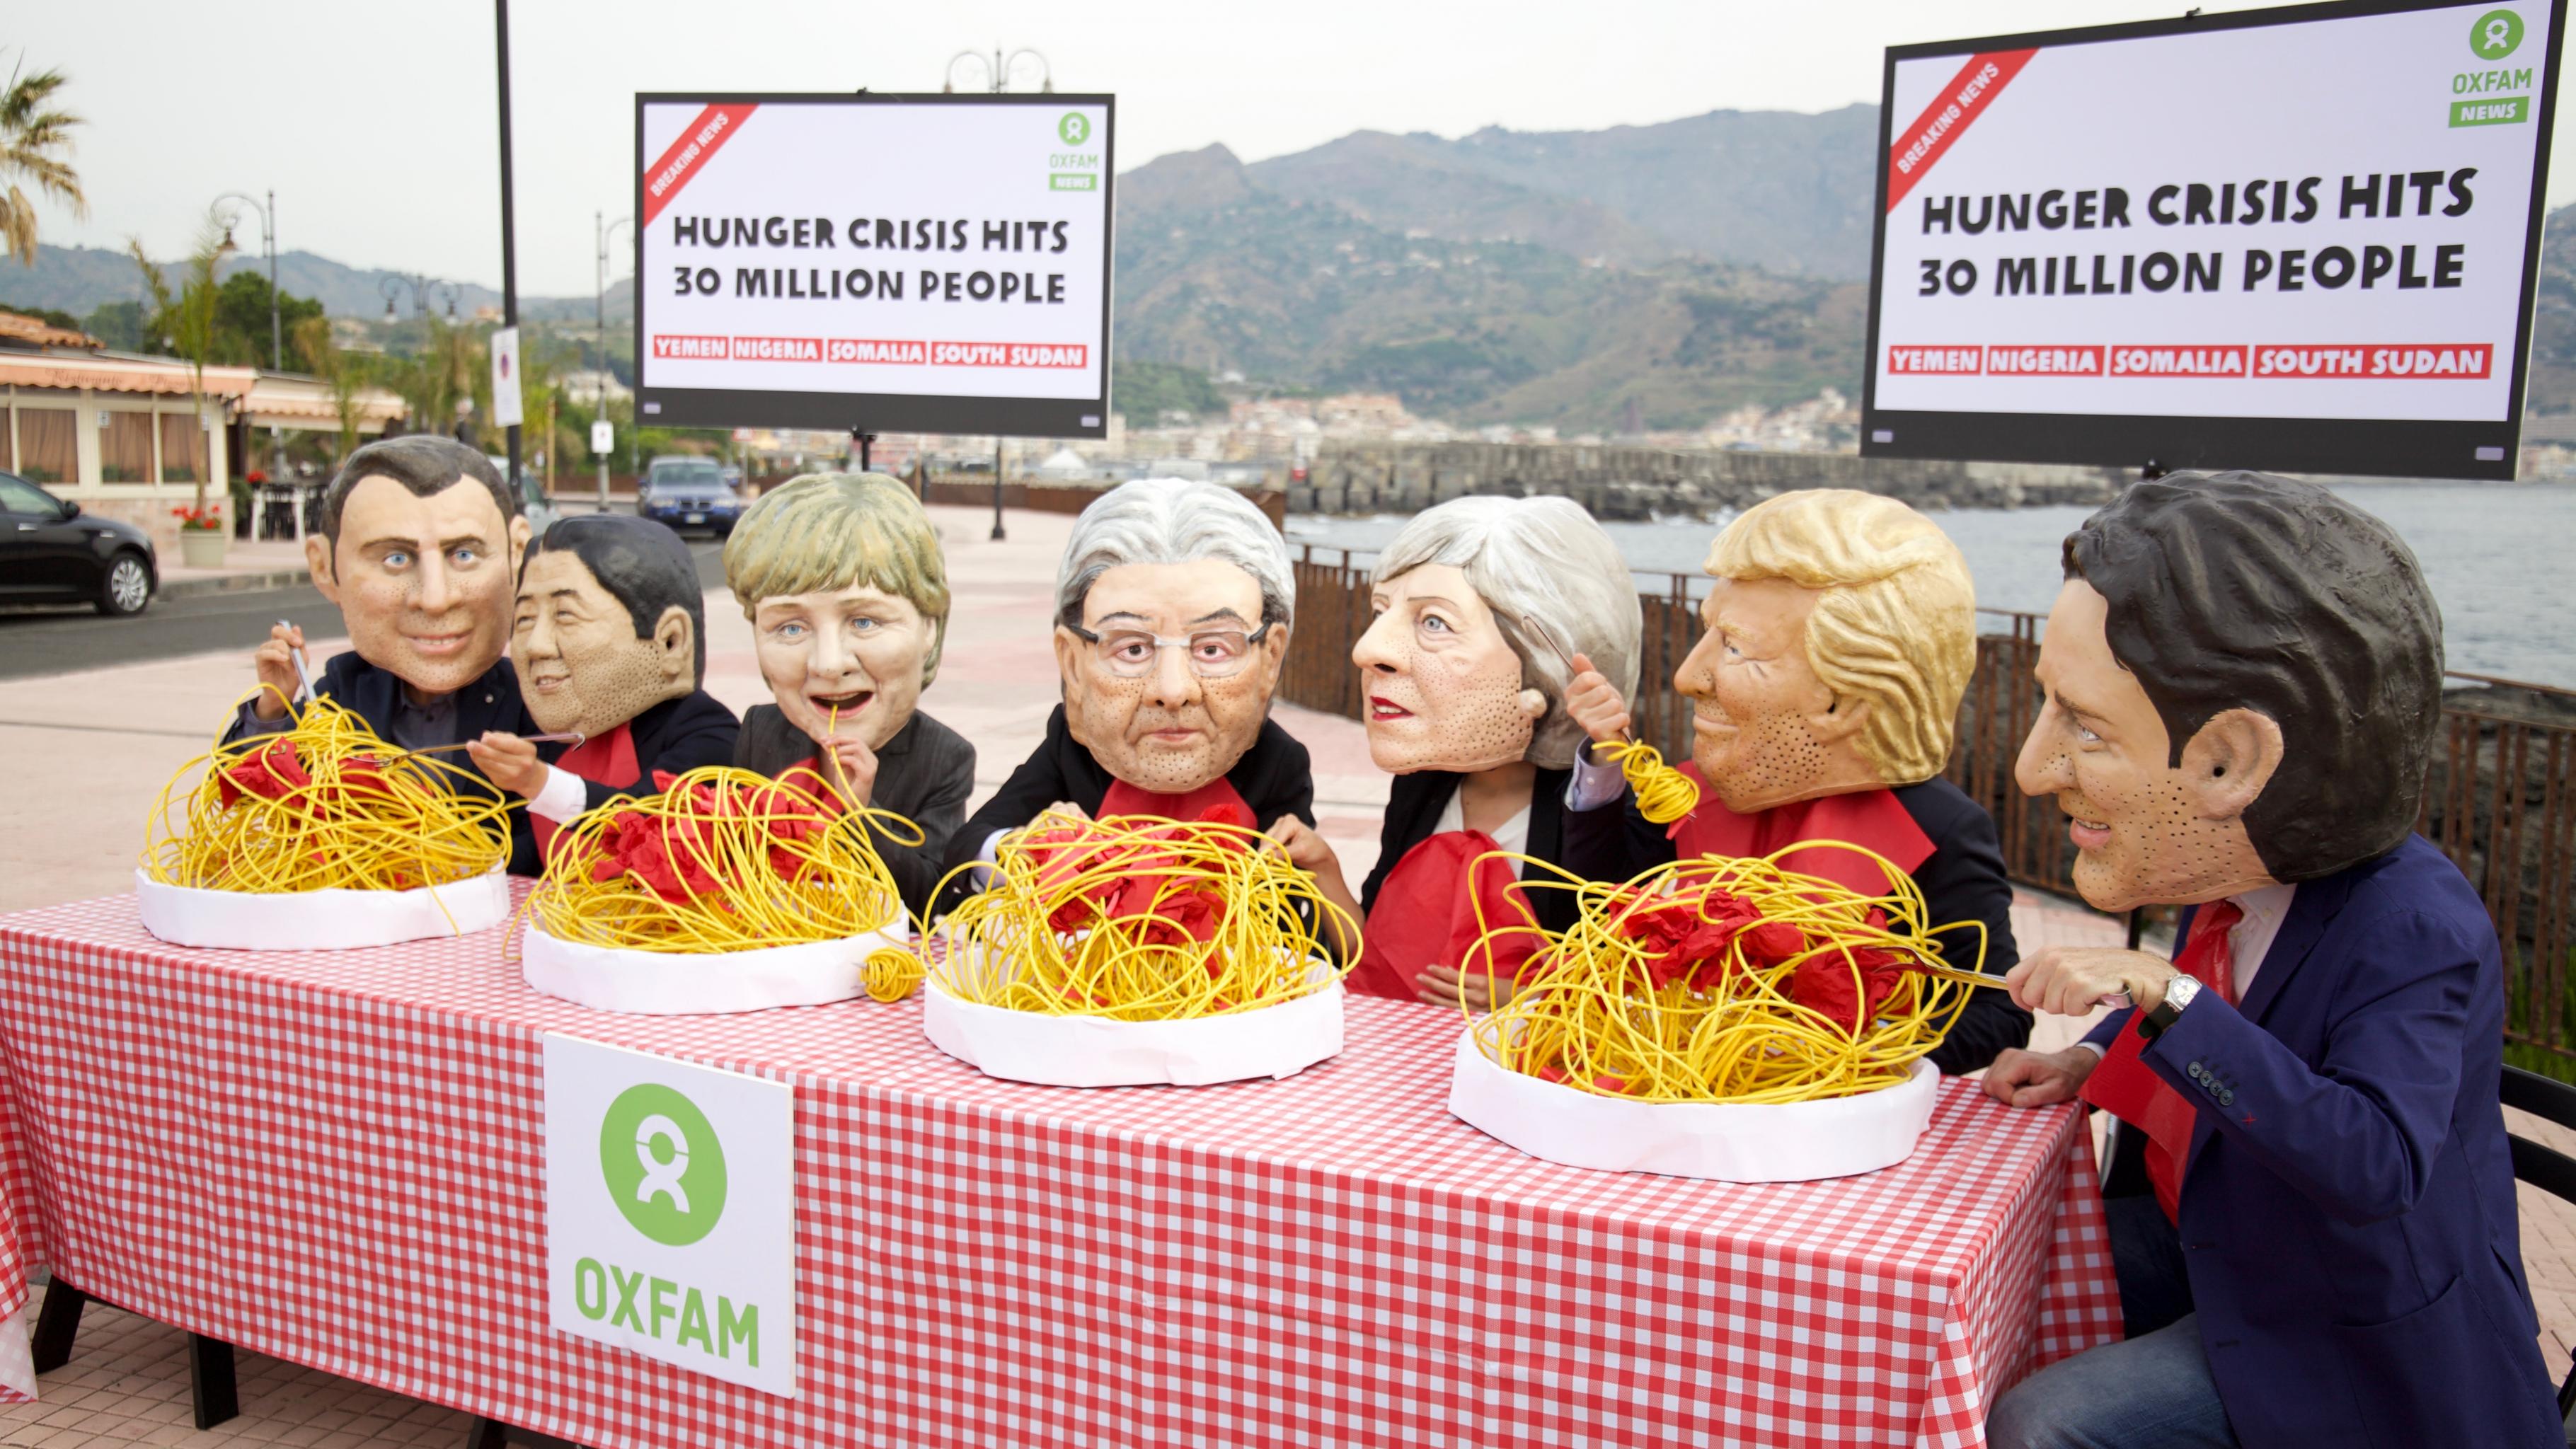 Aktivist/innen mit Masken der Staats- und Regierungschefs essen Spaghetti, während im Hintergrund auf Fernsehern die Meldung erscheint: "Hunger crisis hits 30 million people – Yemen, Nigeria, Somalia, South Sudan"